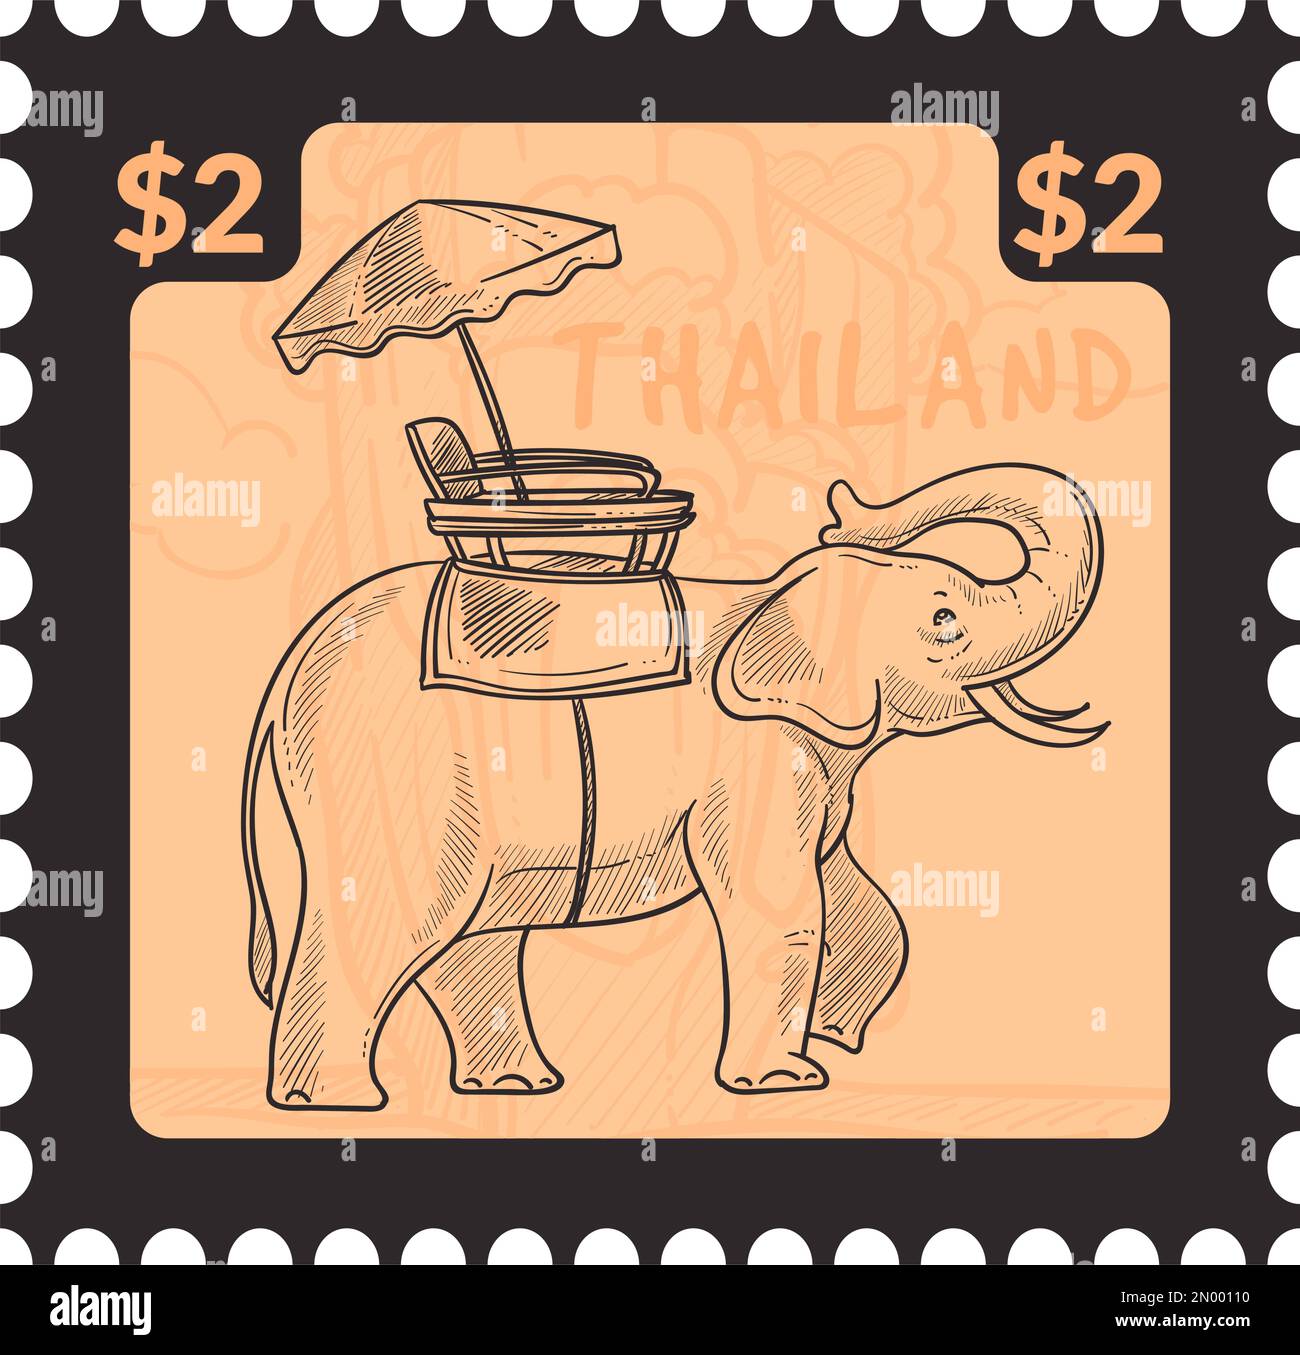 Intrattenimento ricreativo in Thailandia, giro in elefante Illustrazione Vettoriale